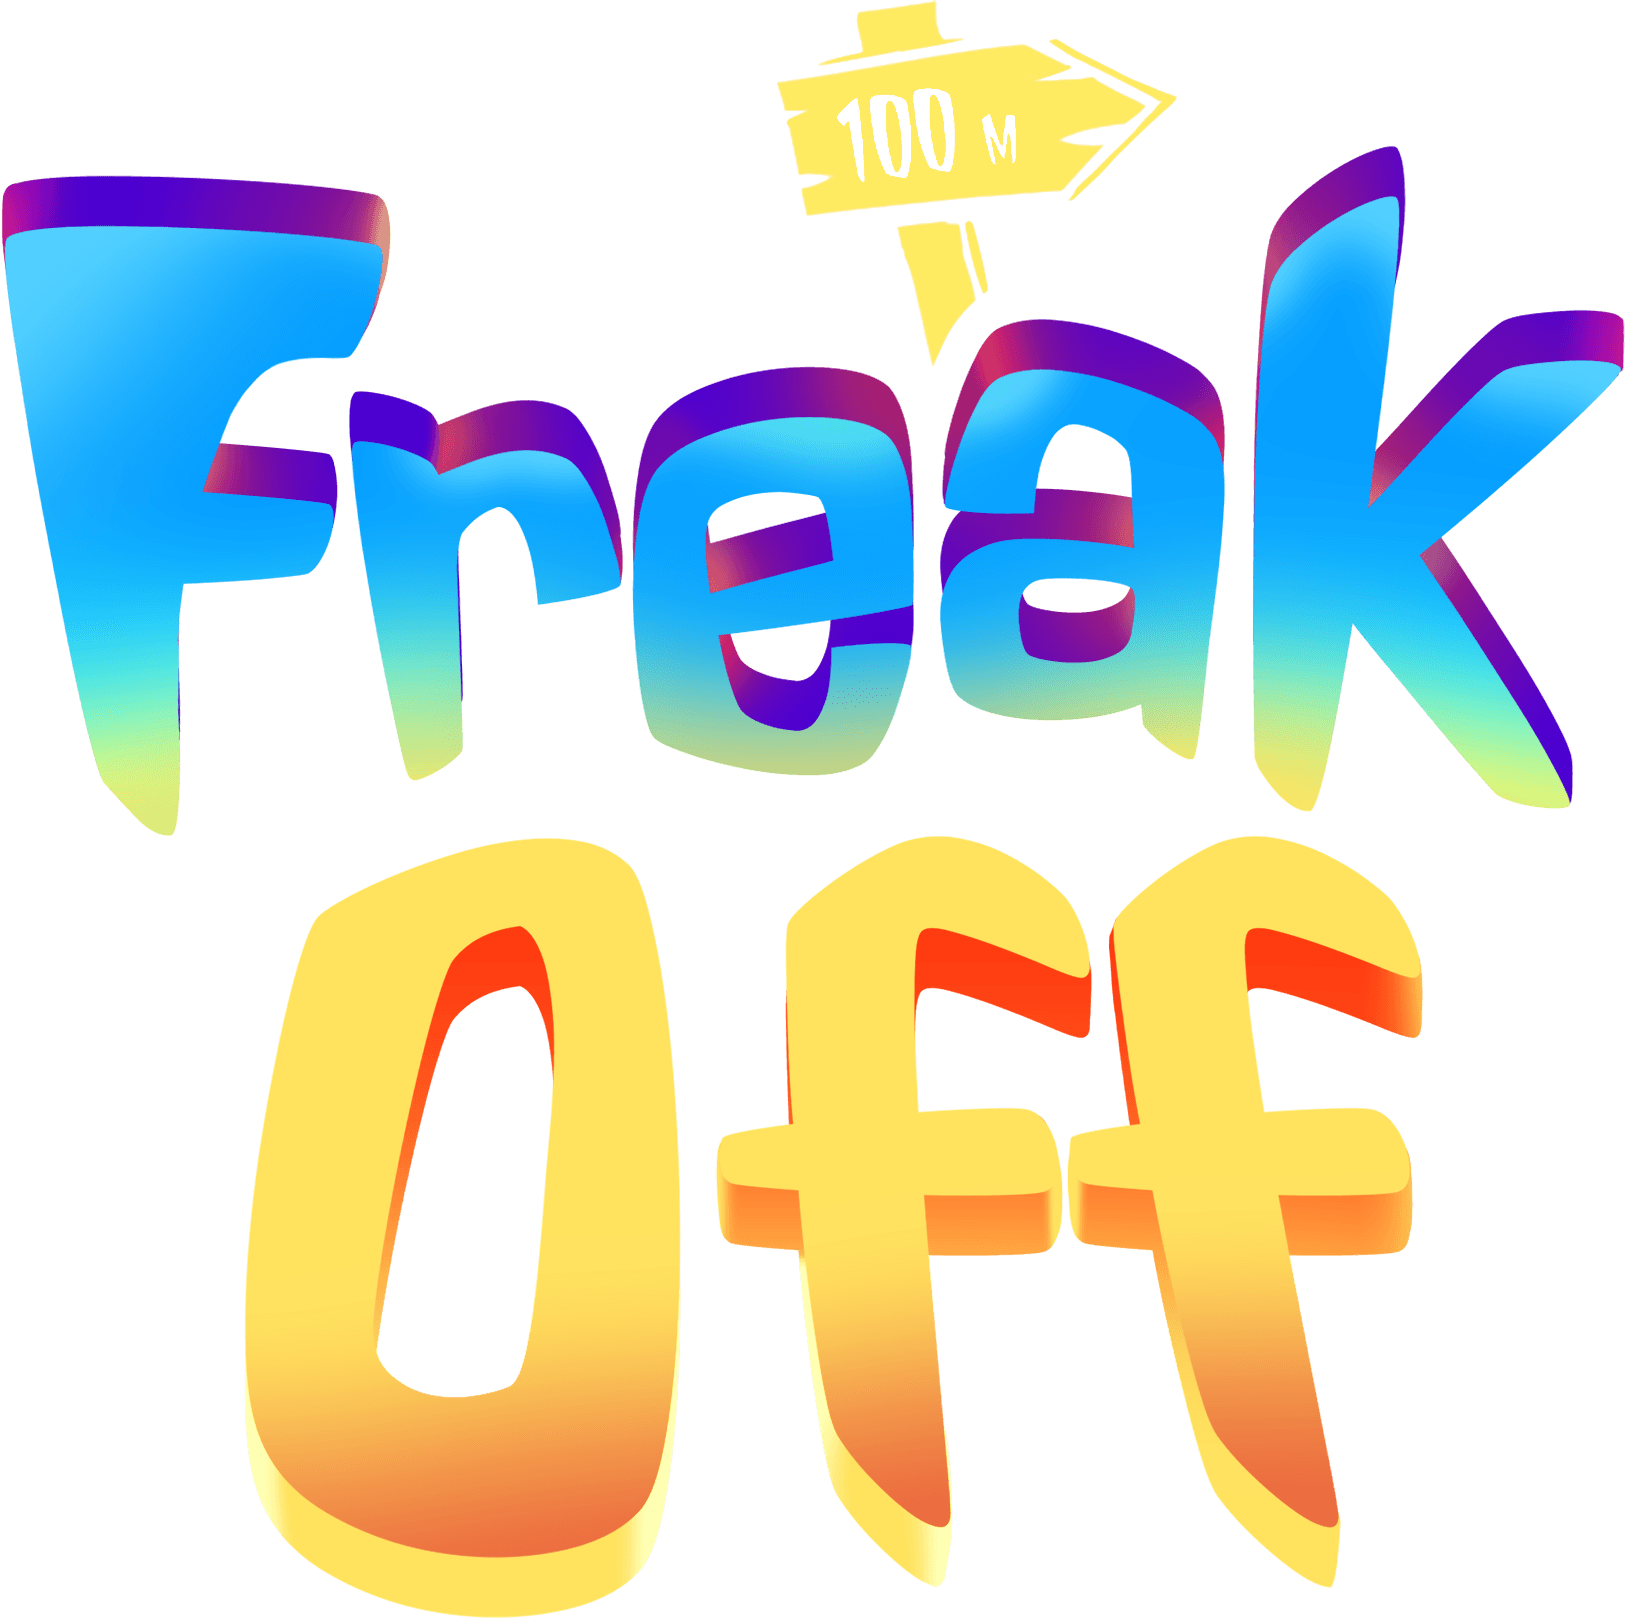 The freakoff logo